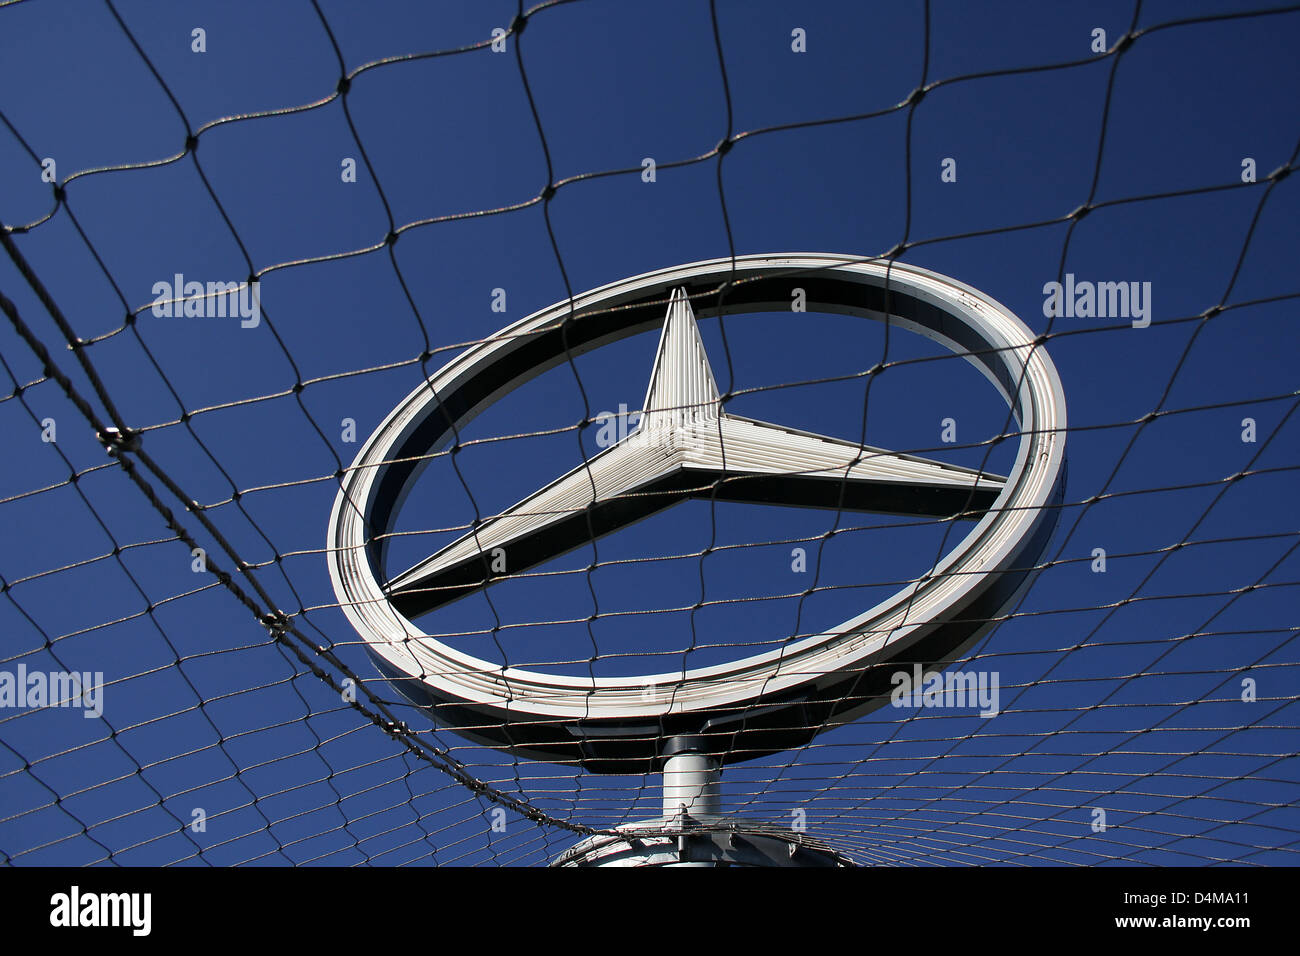 Große Mercedes-Benz Logo-Leuchtschrift mit Logo auf der …